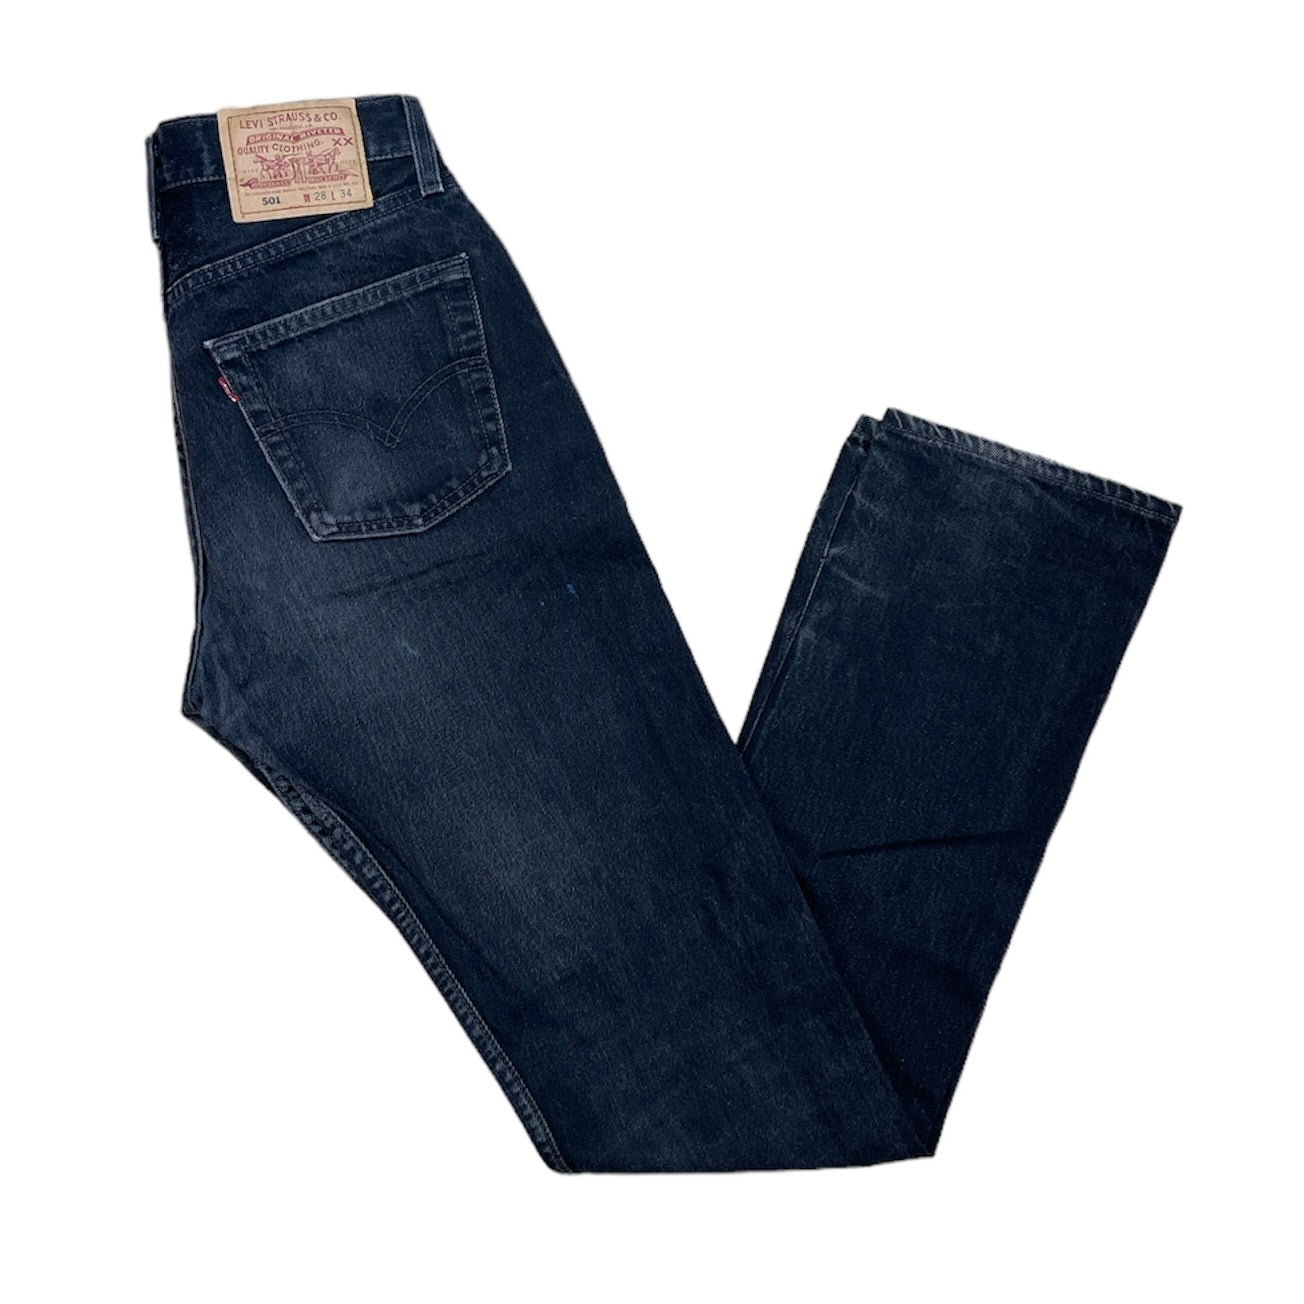 Vintage Levis 501 Vintage Black Jeans (W28/L34)